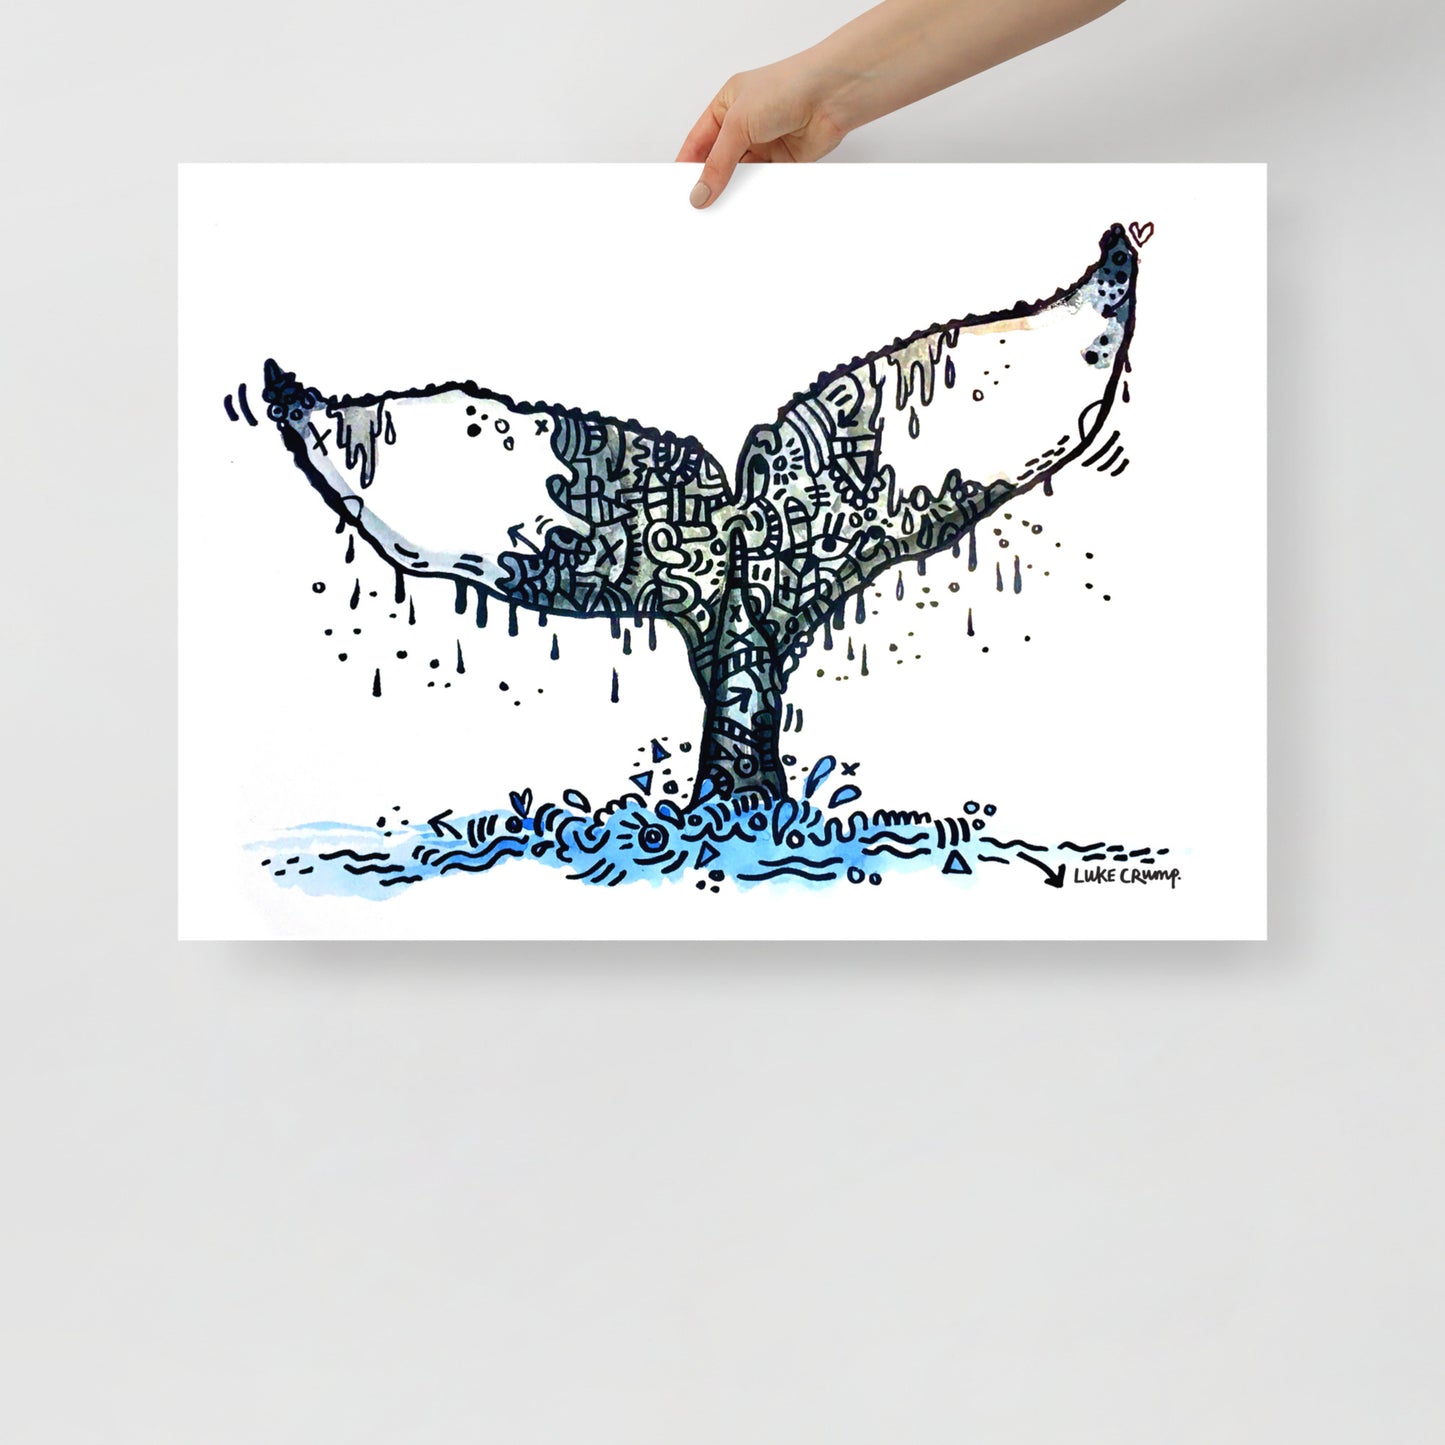 'Whale' Print